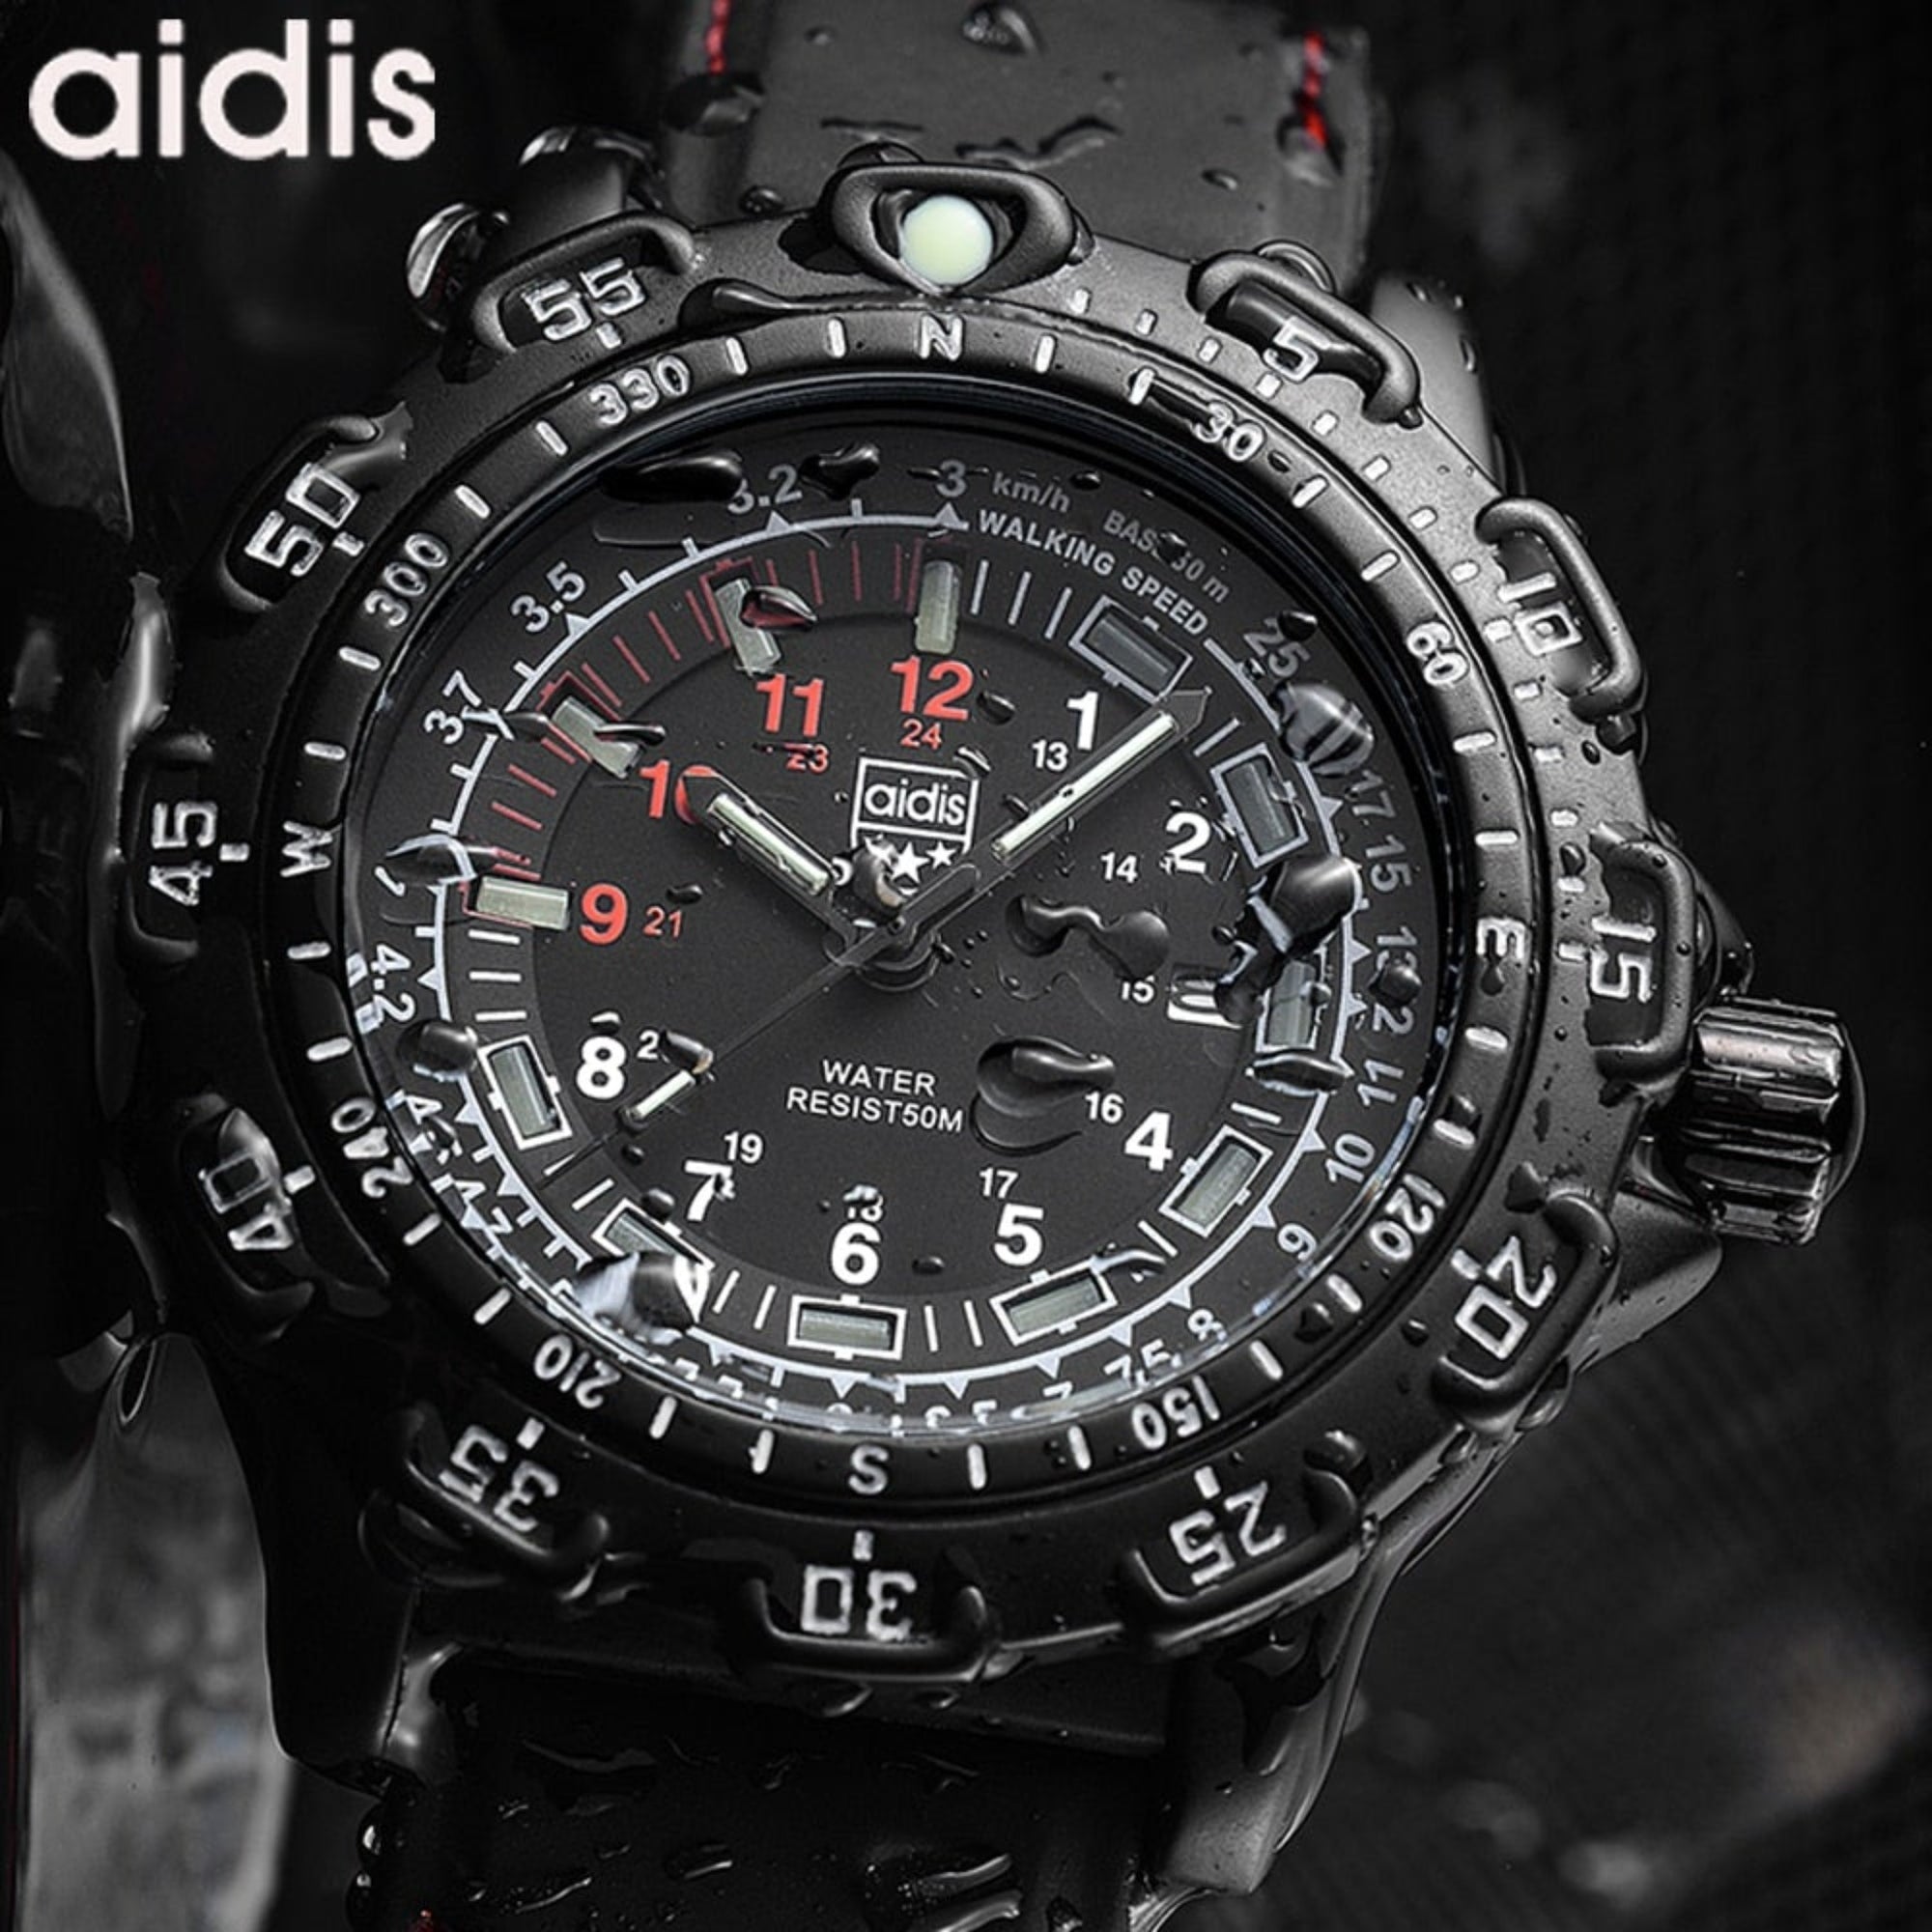 Aidis Military Watch